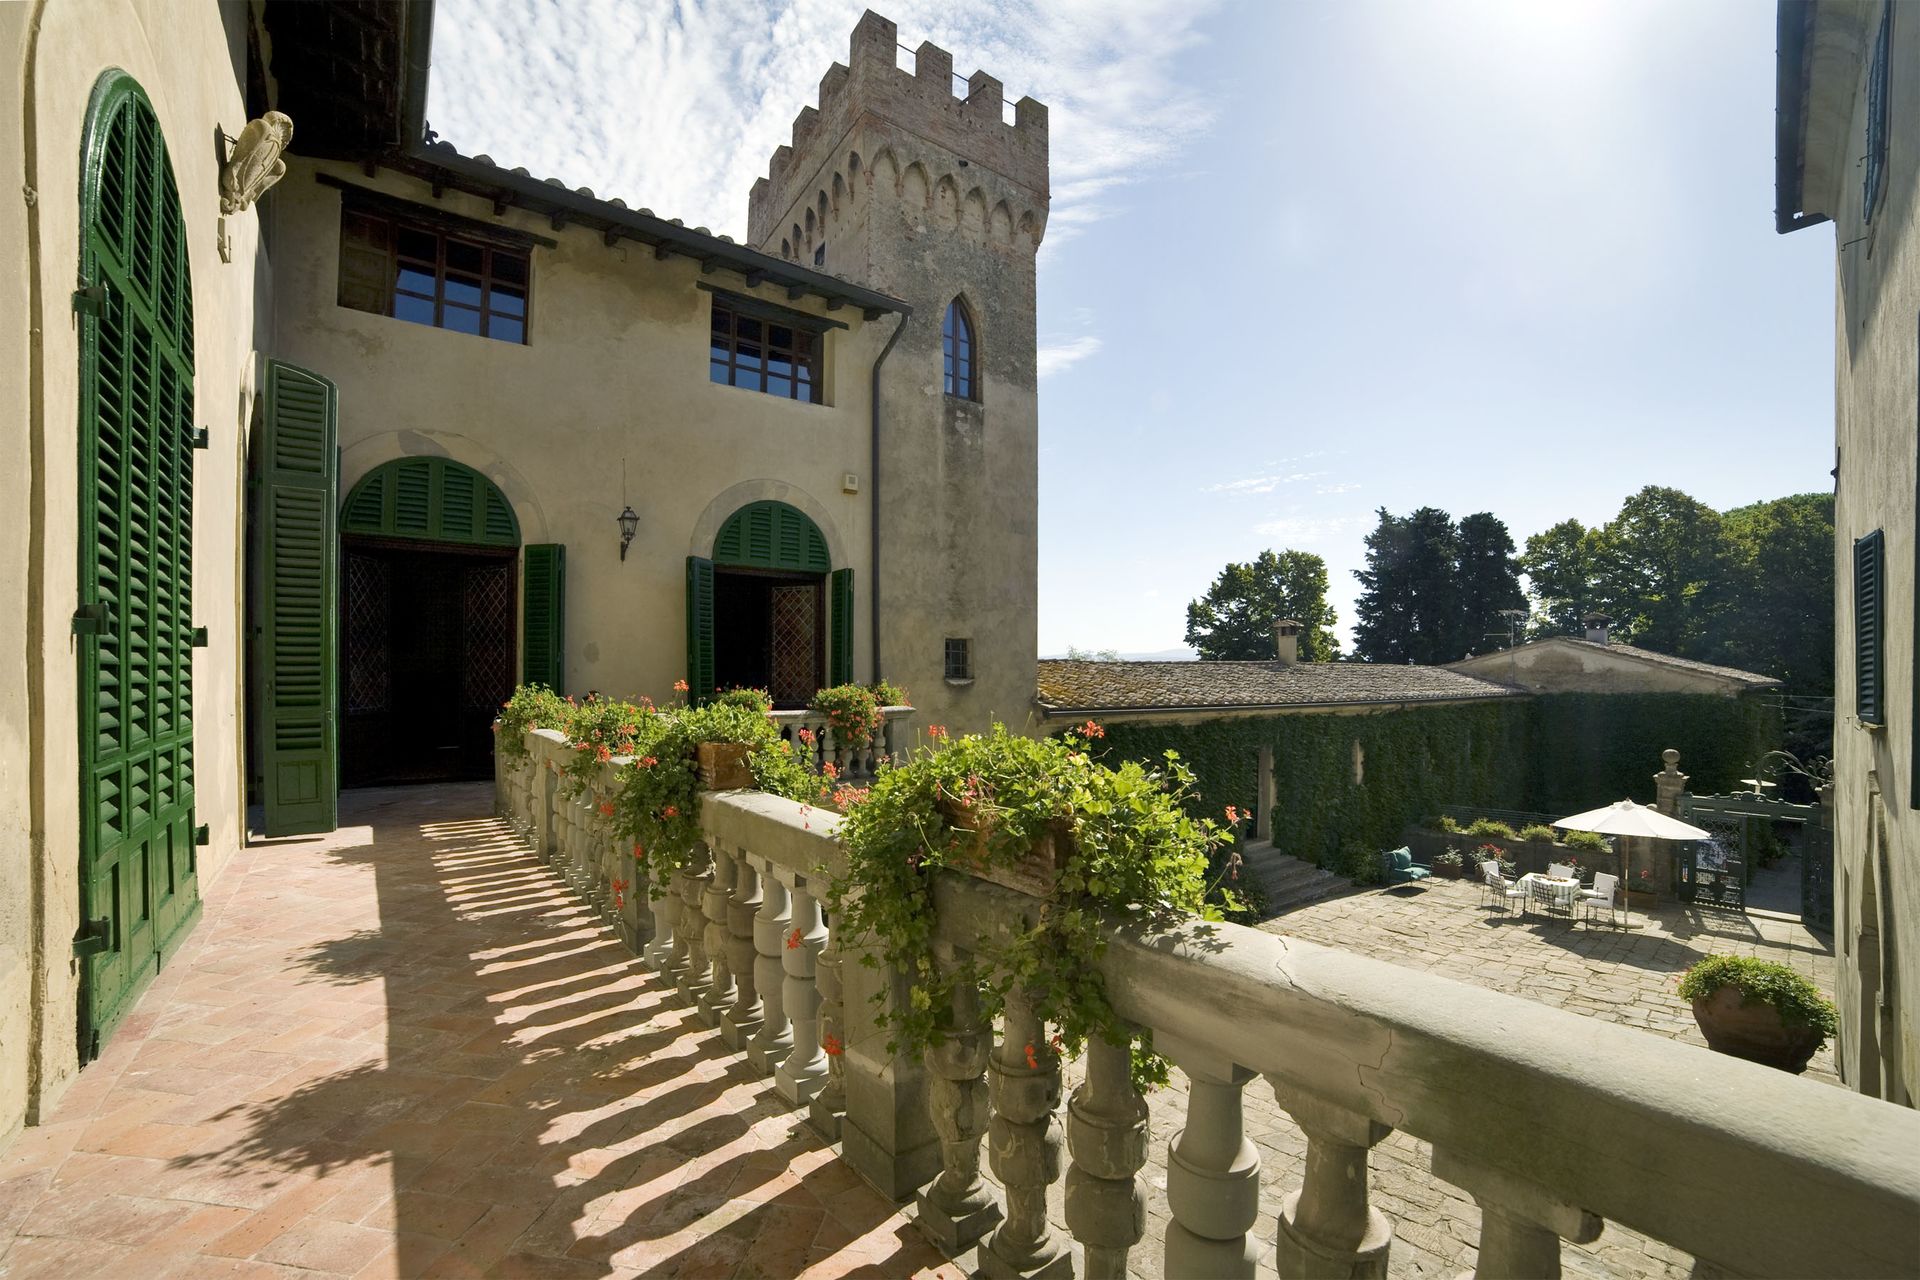  Villa  di Montelopio Toscane  Pise Italie Location 